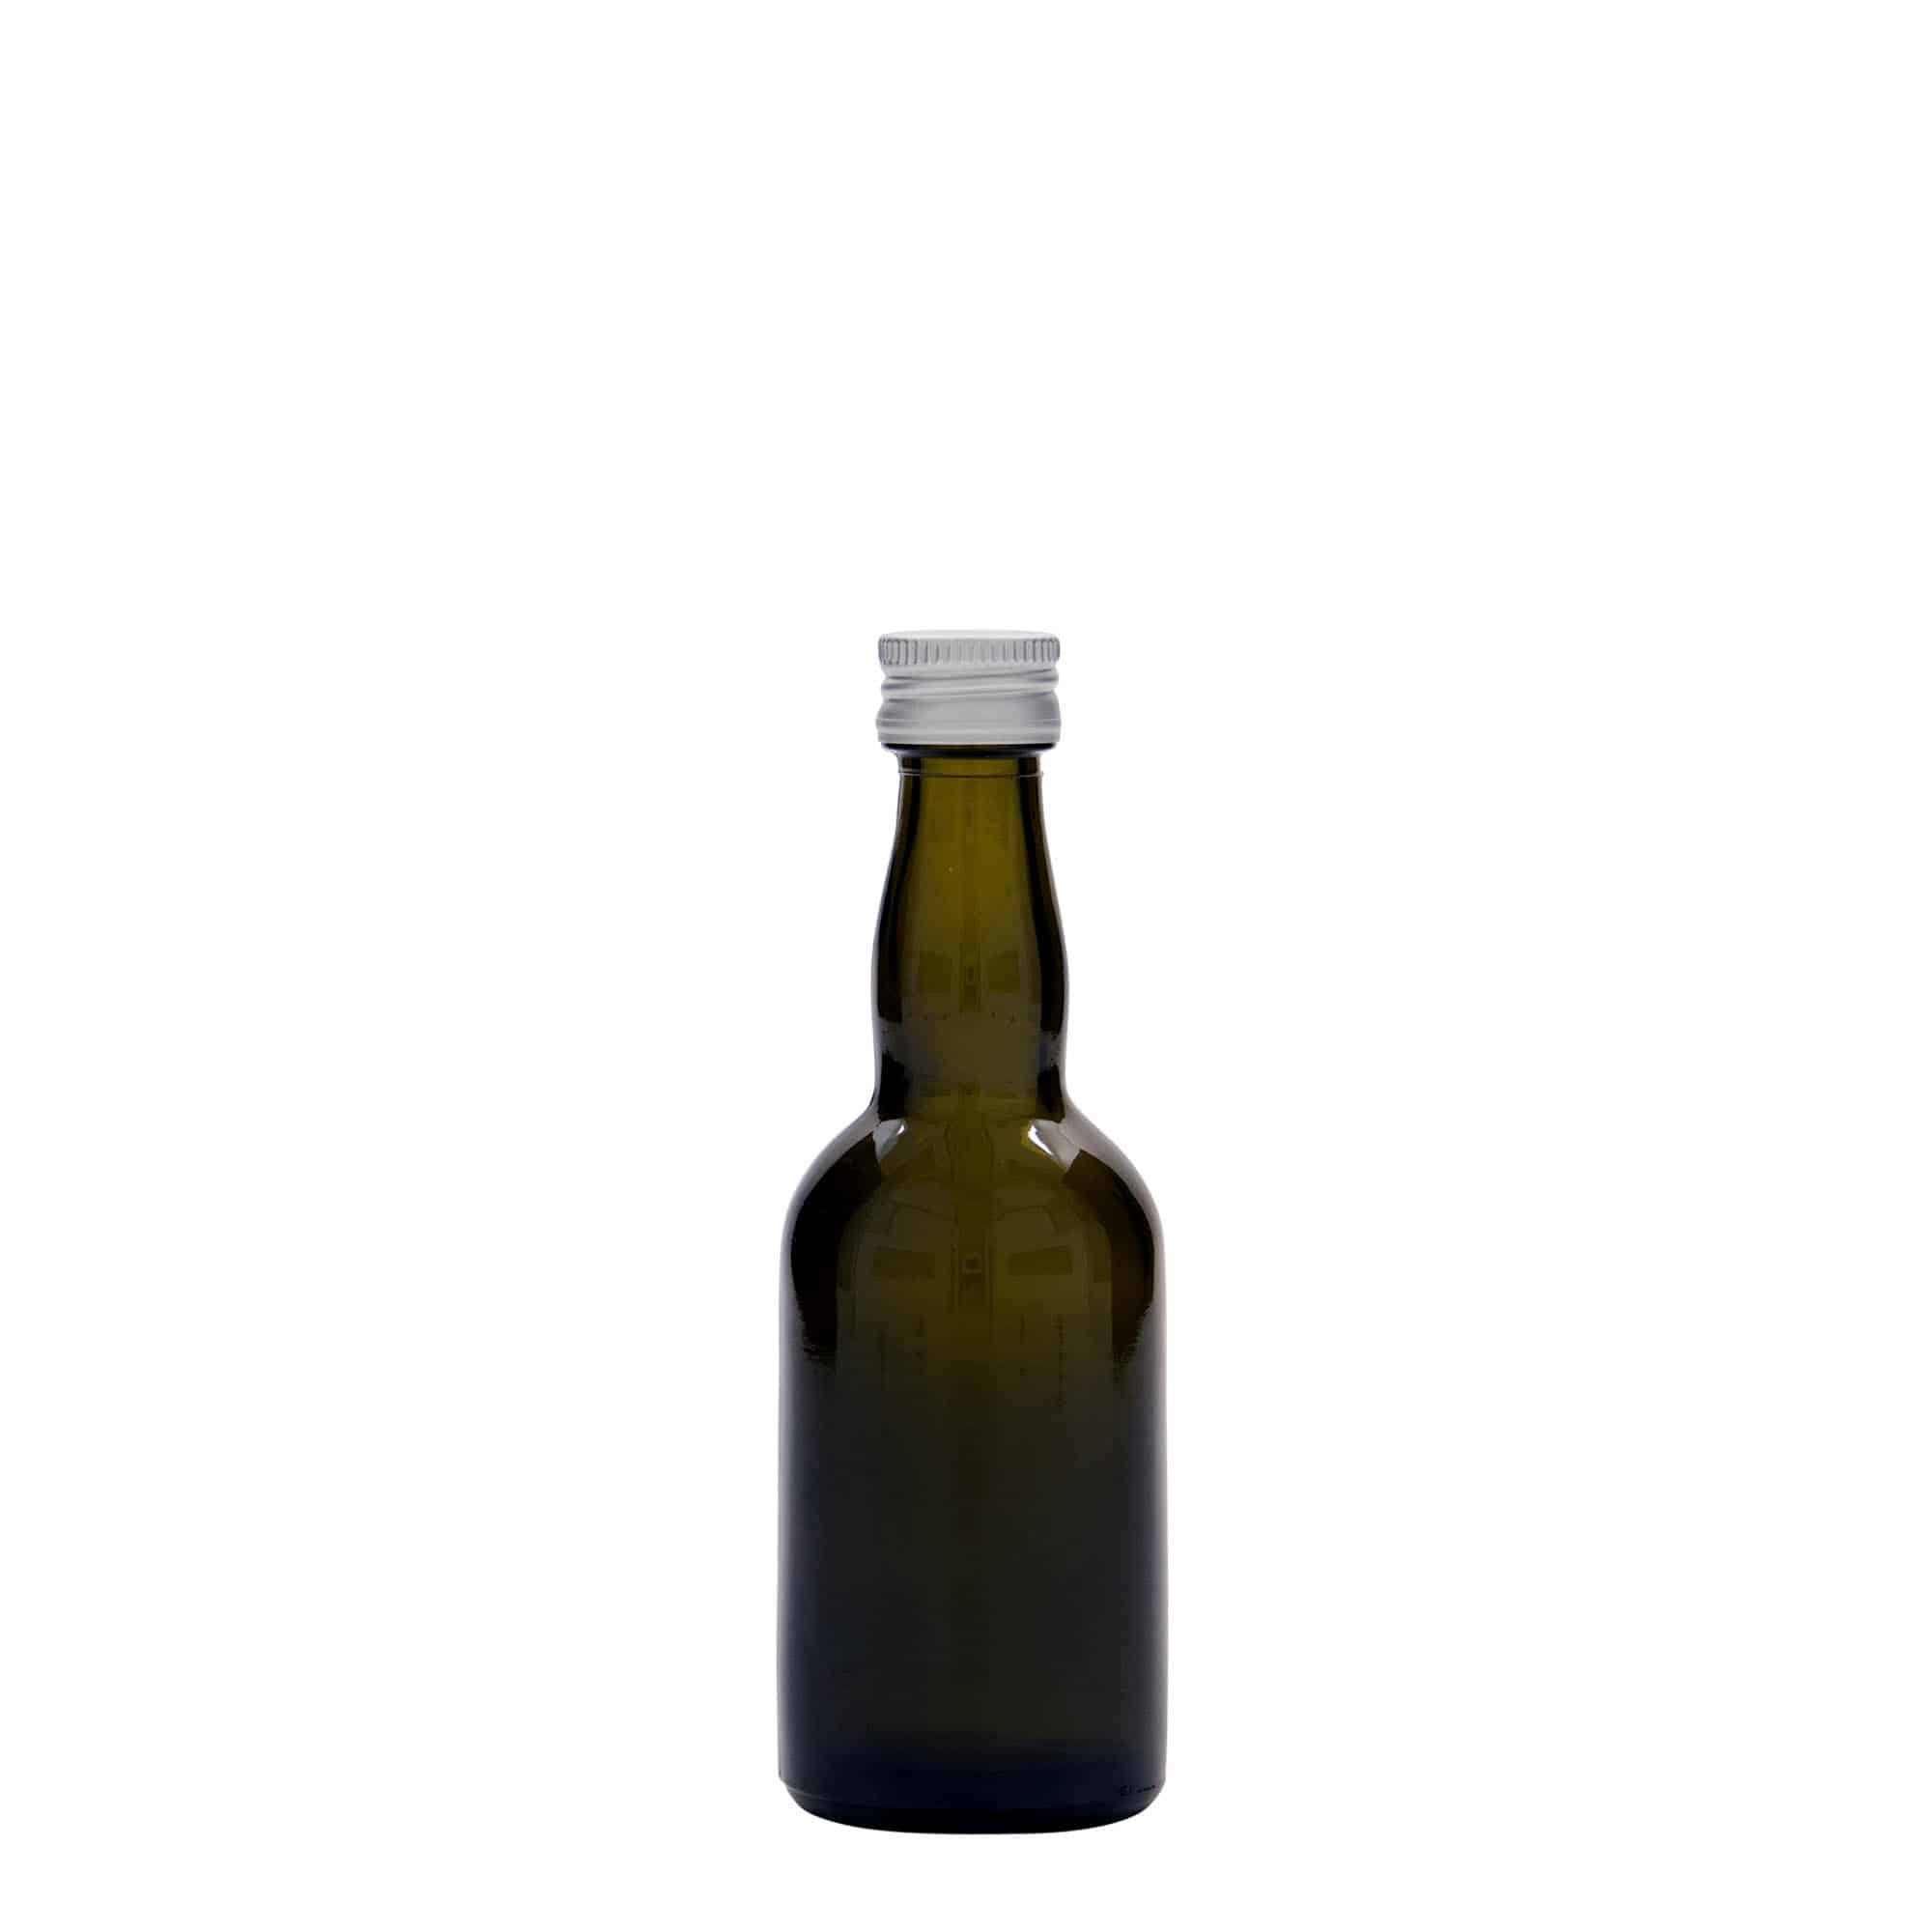 50 ml glasflaske 'Proba', antikgrøn, åbning: PP 18